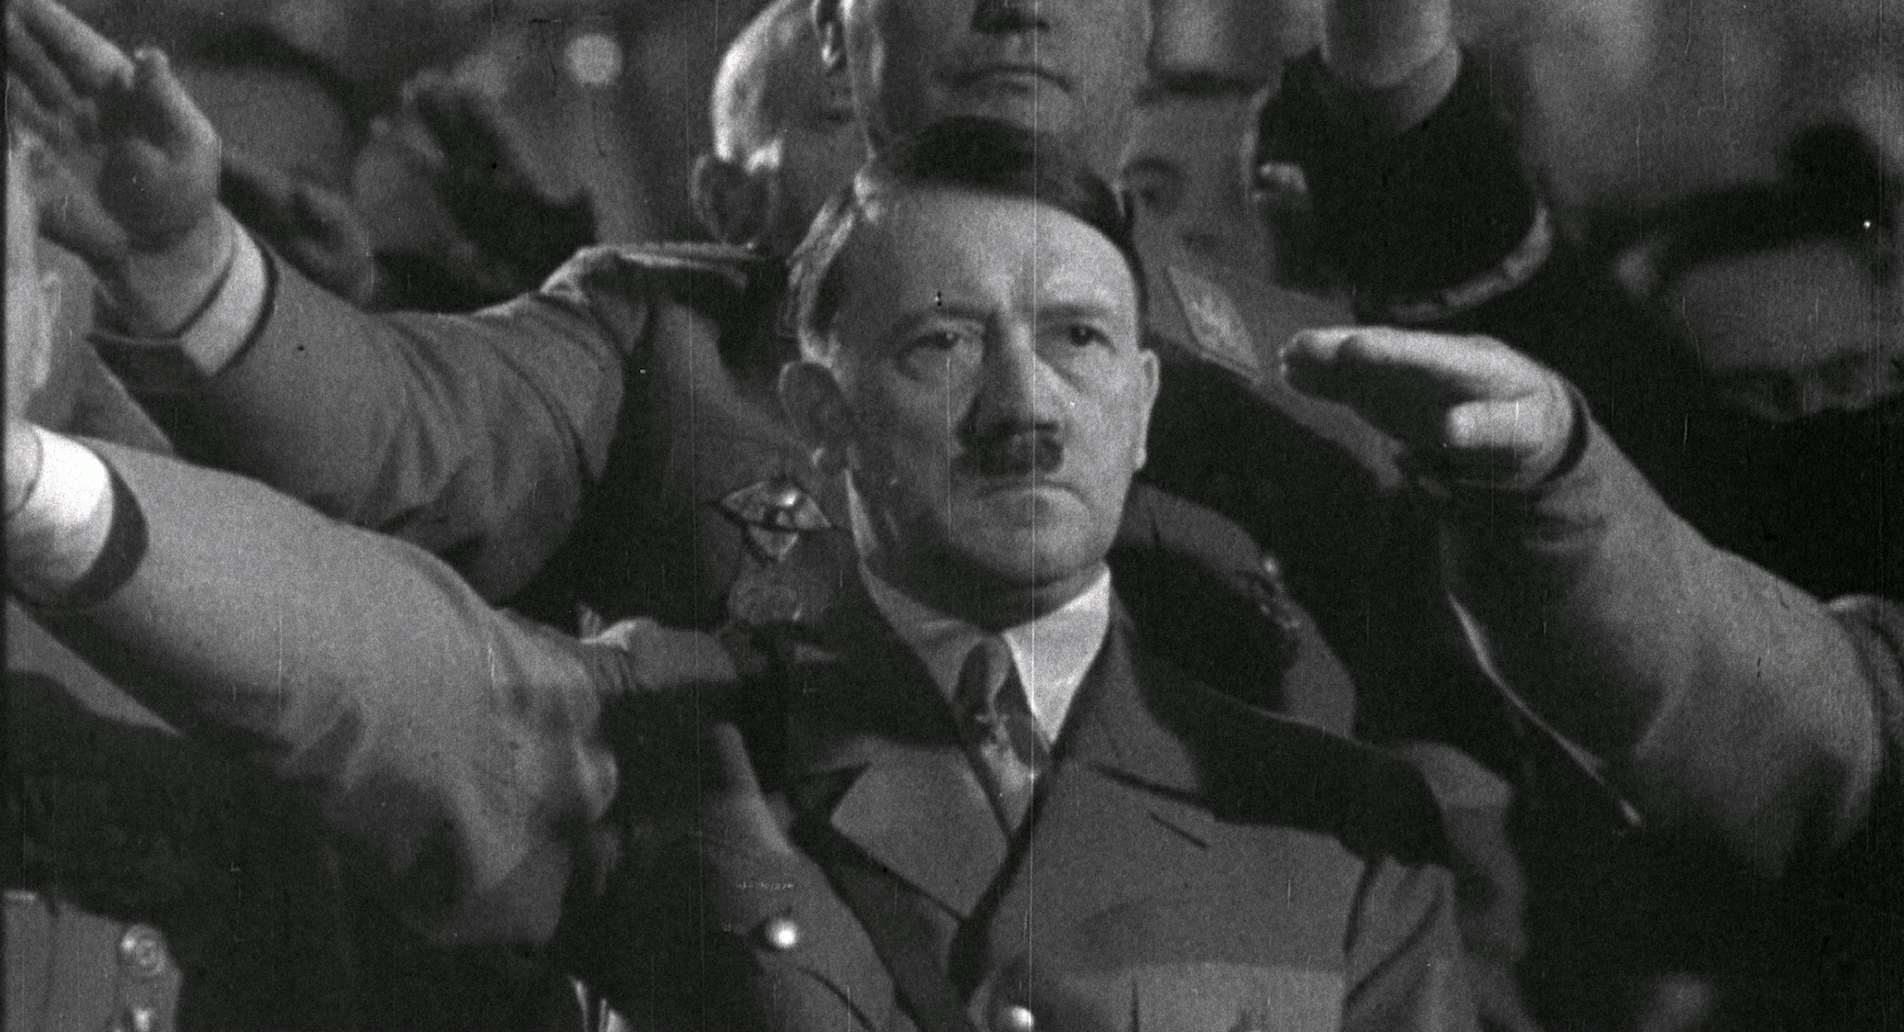 ヒトラーによる美術品略奪の歴史を紐解く。映画『ヒトラーVS.ピカソ 奪